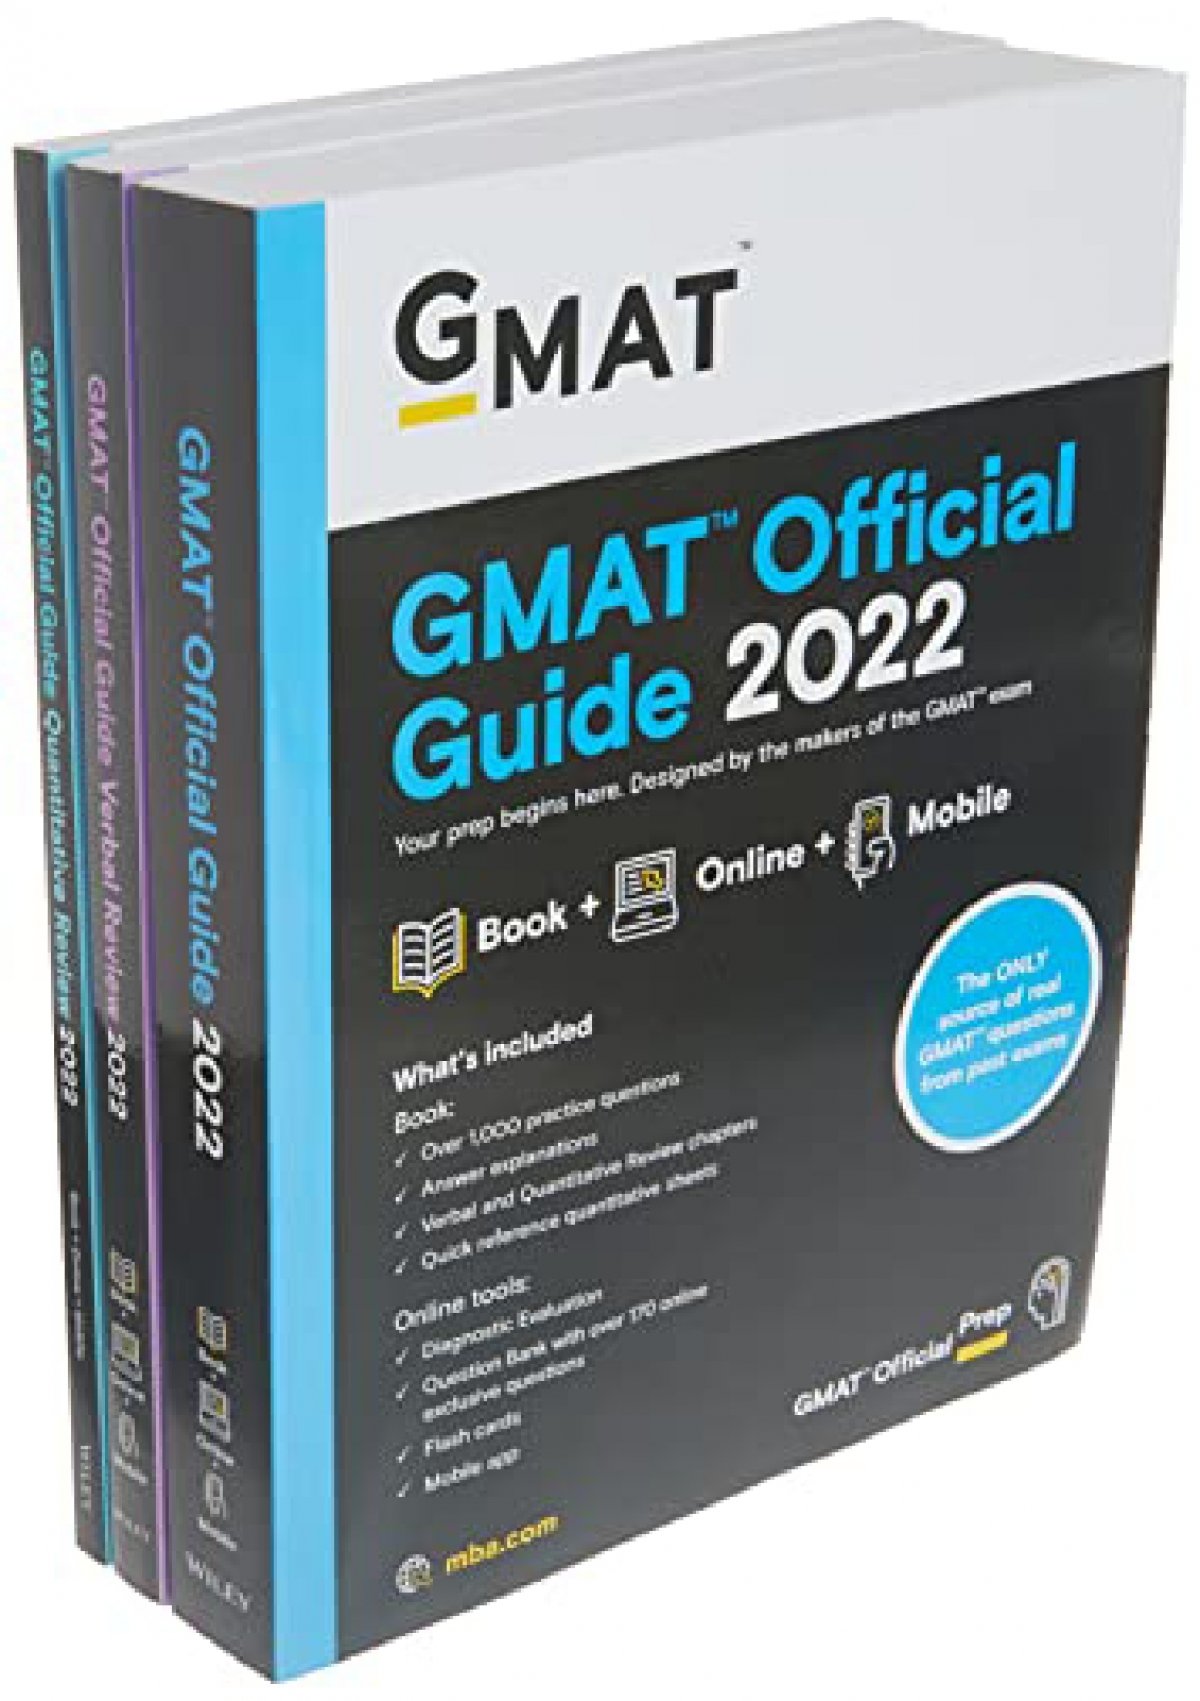 [PDF] GMAT Official Guide 2022 Bundle: Books + Online